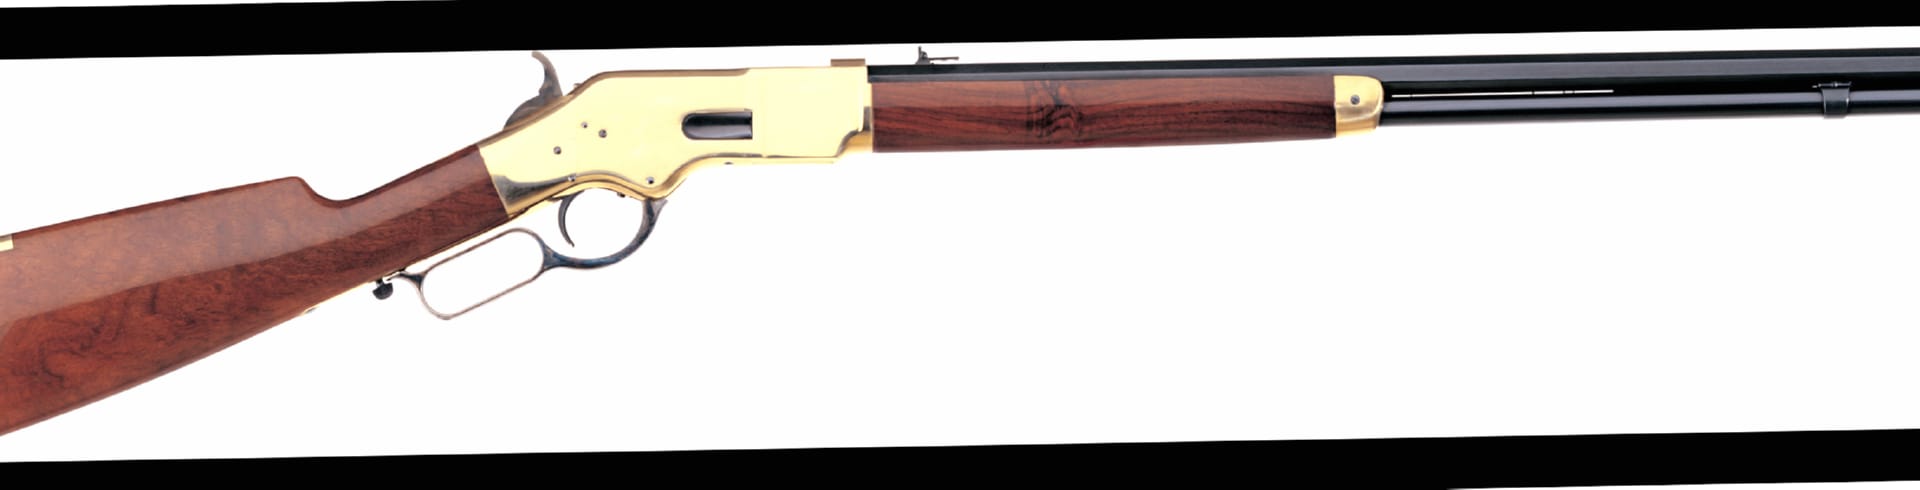 Uberti 1866 Yellowboy Rifle wallpapers HD quality